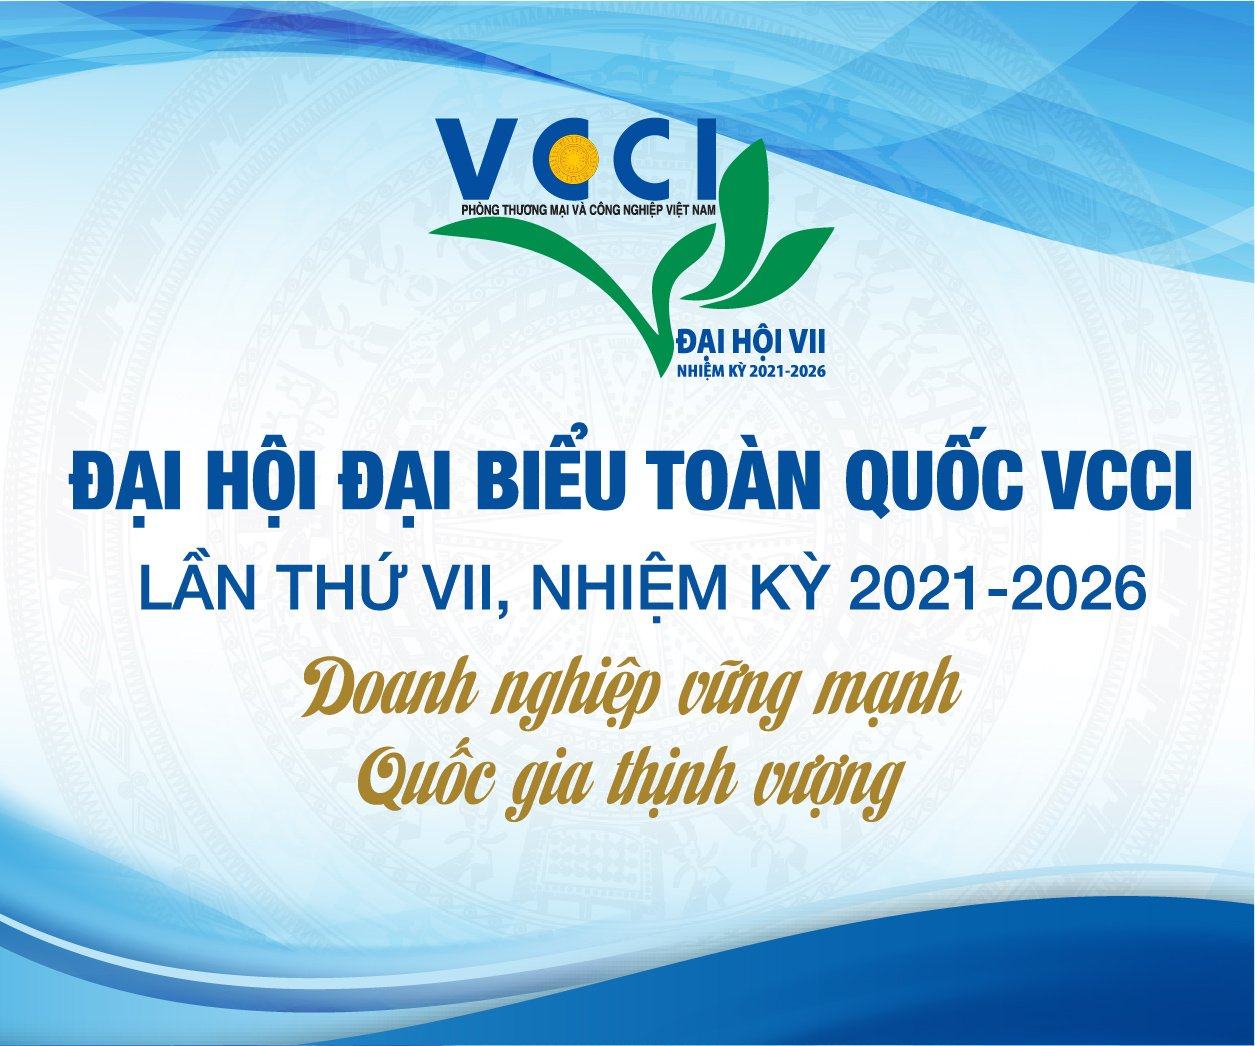 Chào mừng Đại hội Đại biểu toàn quốc VCCI lần VII: VCCI Đà Nẵng 30 năm là  nhịp cầu nối cộng đồng doanh nghiệp Miền Trung – Tây Nguyên với Chính phủ